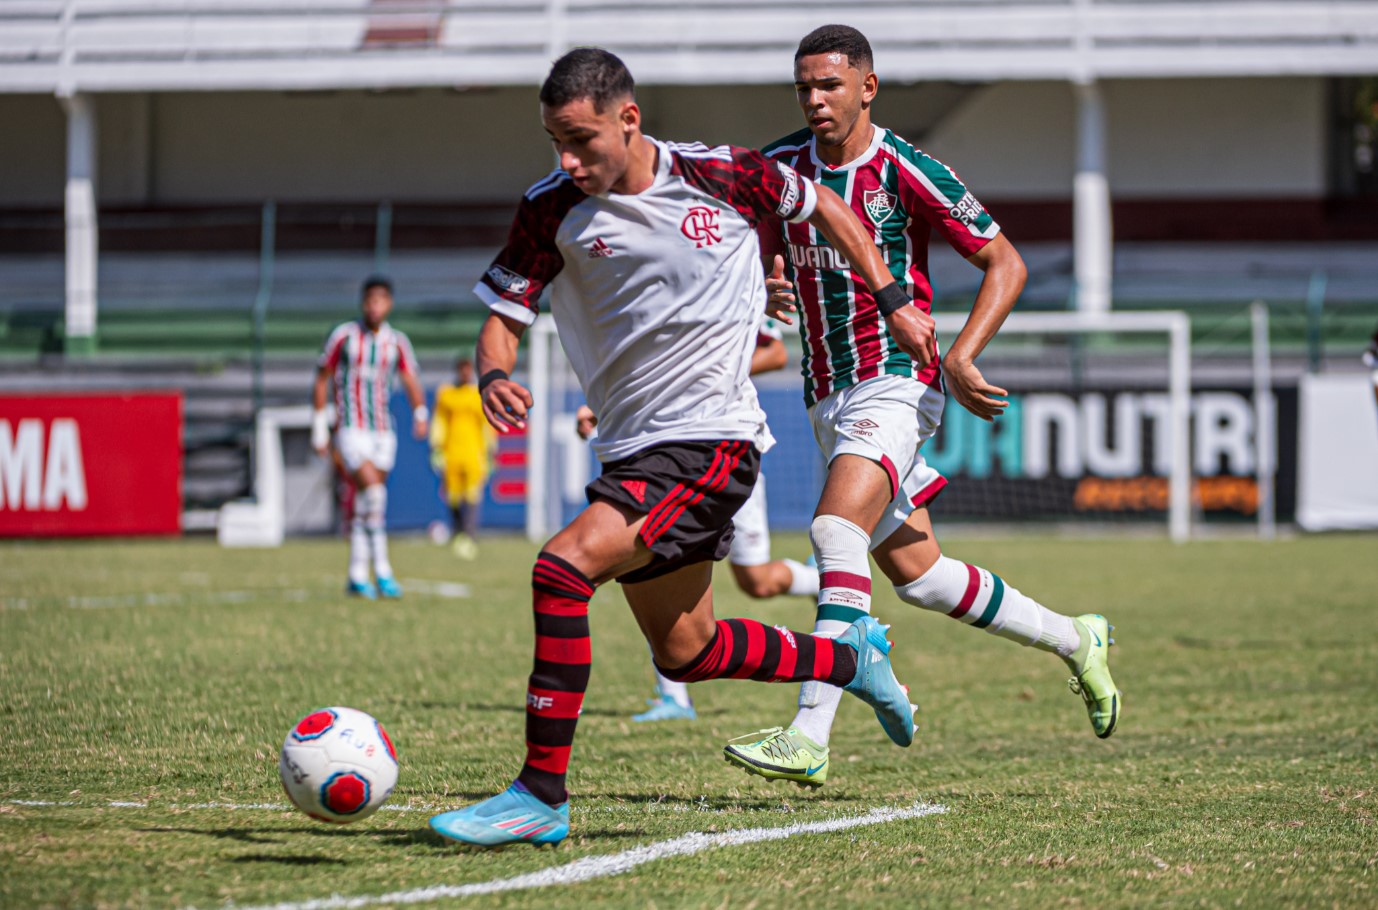 Flu empata com o Botafogo no jogo de ida da semifinal da Copa Rio Sub-15 —  Fluminense Football Club